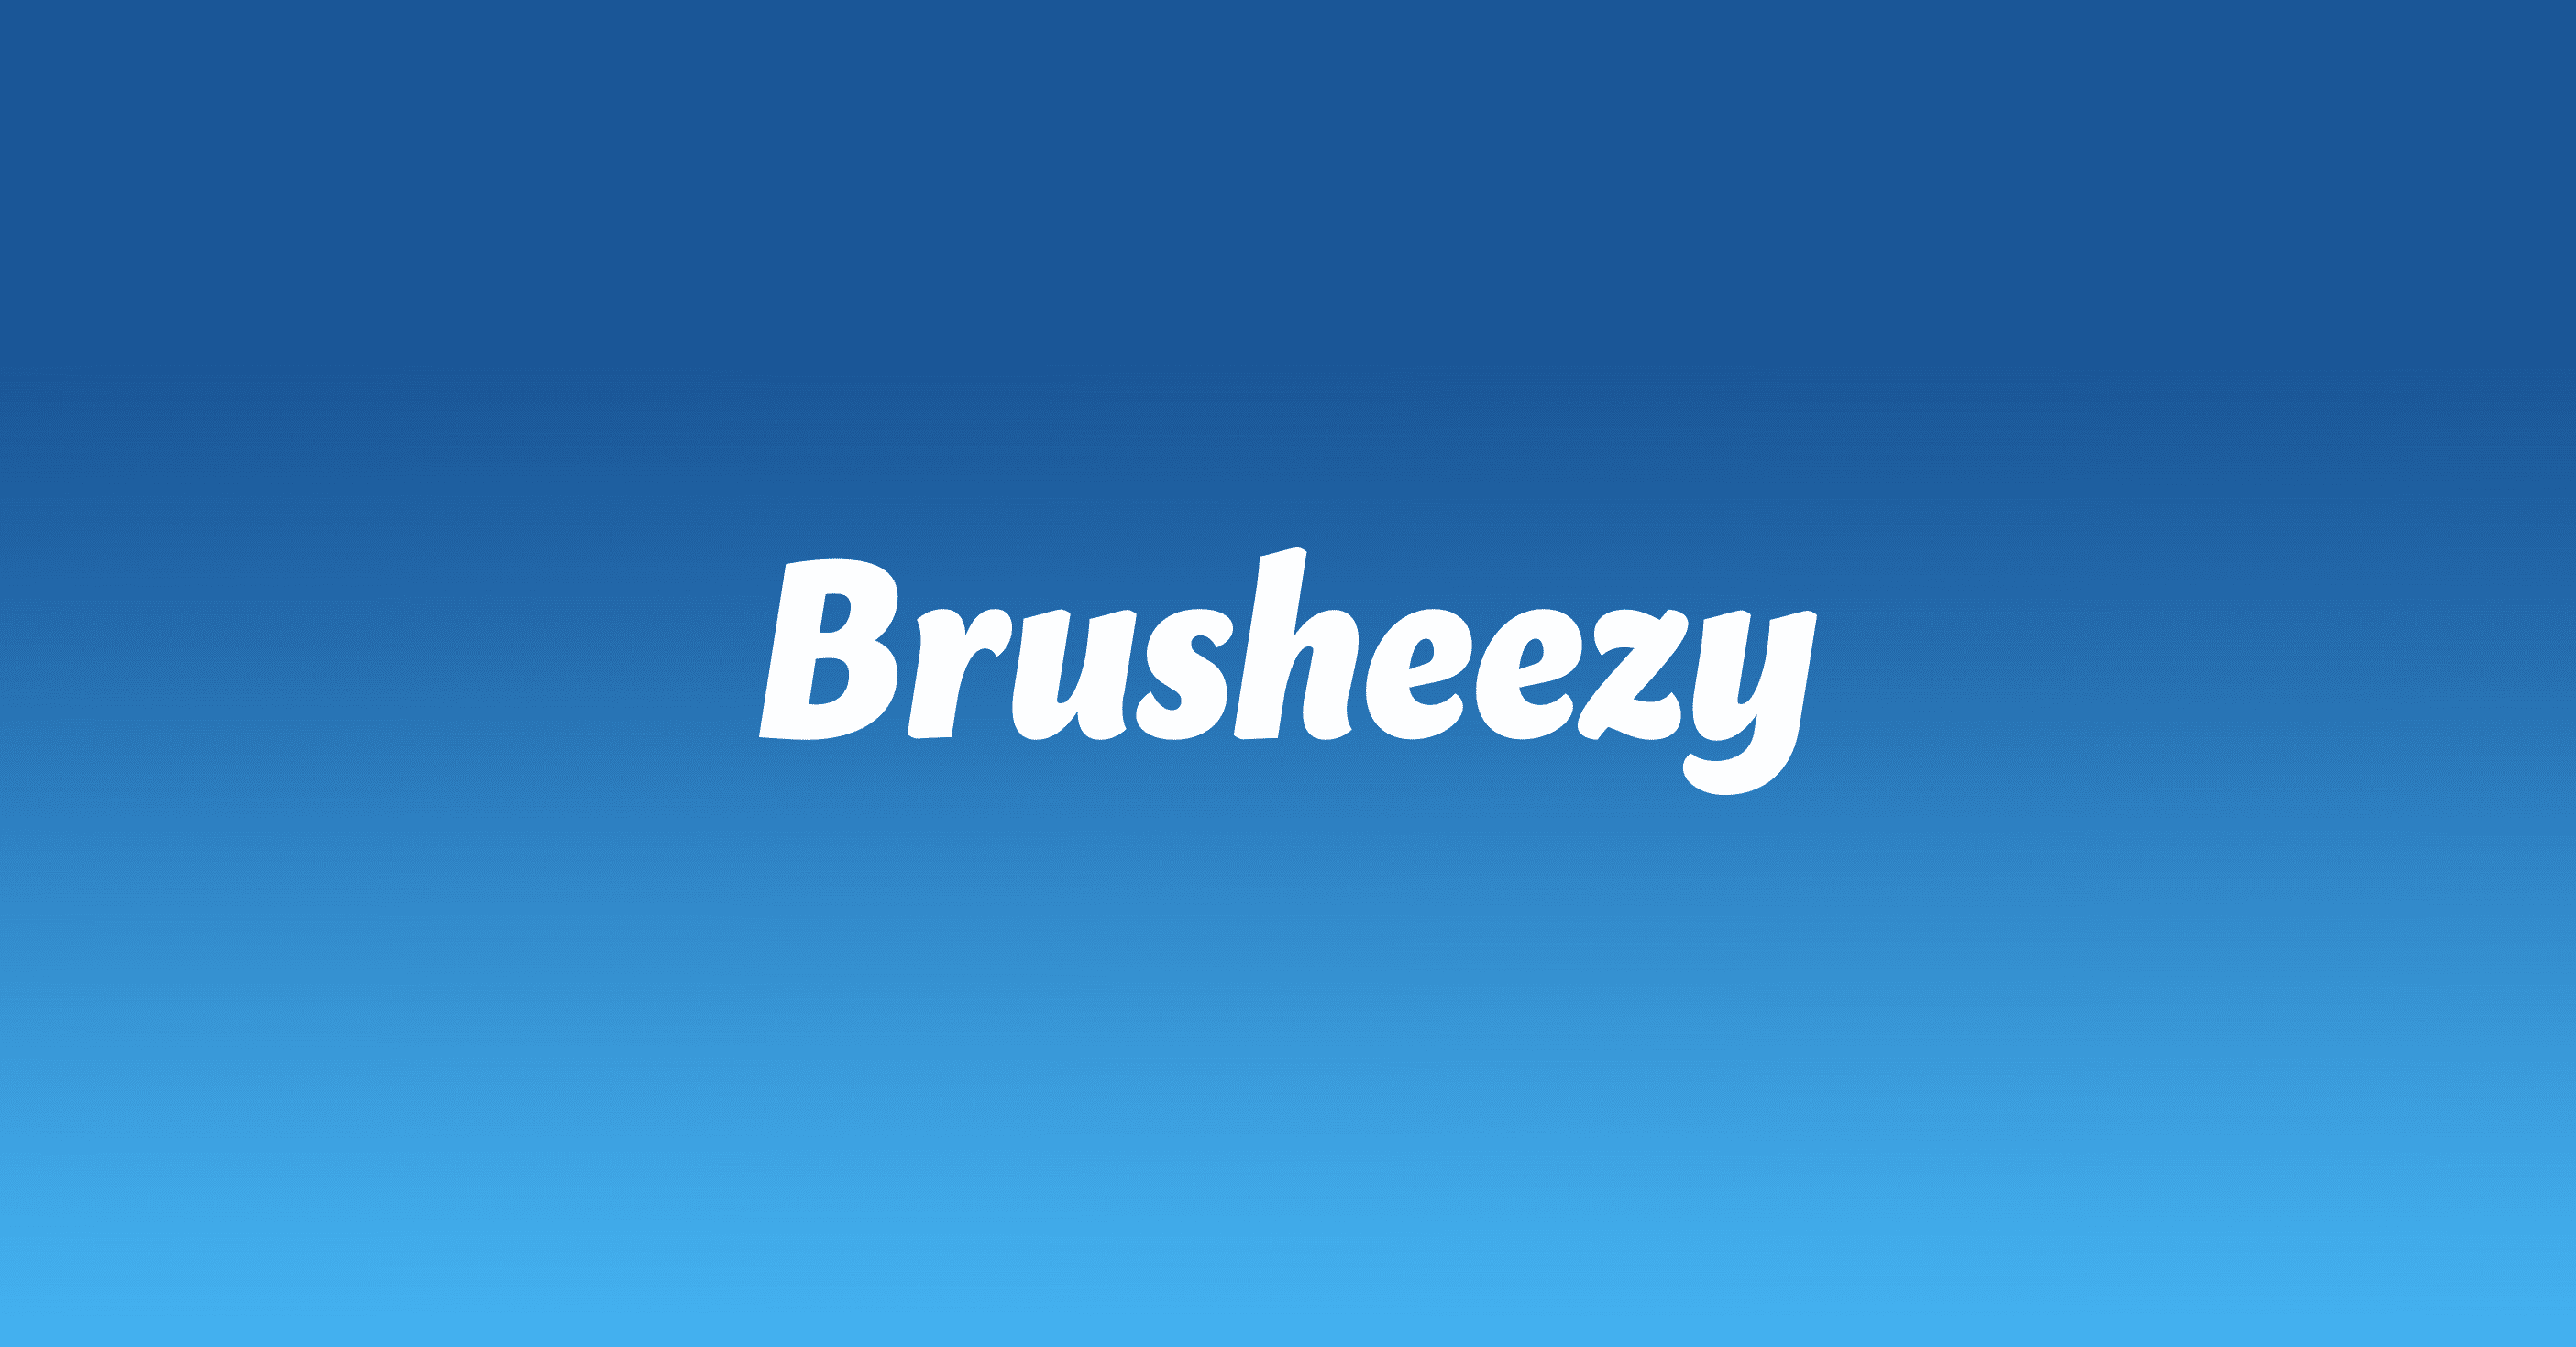 www.brusheezy.com